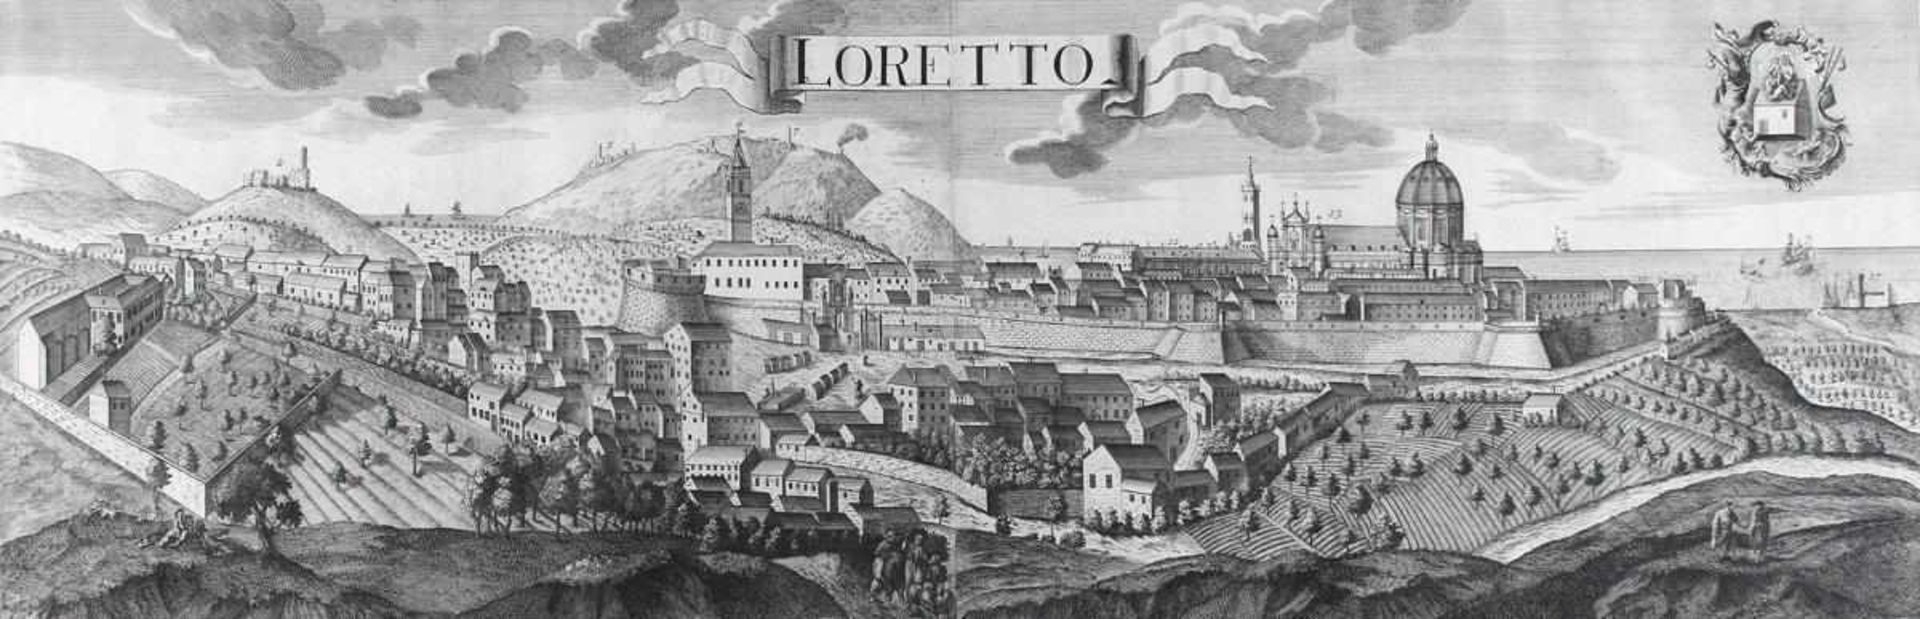 Loretto.2 versch. Gesamtansichten bei Erben Wolff bzw. n. Werner bei Probst Wolff Erben, Augsburg um - Bild 2 aus 2